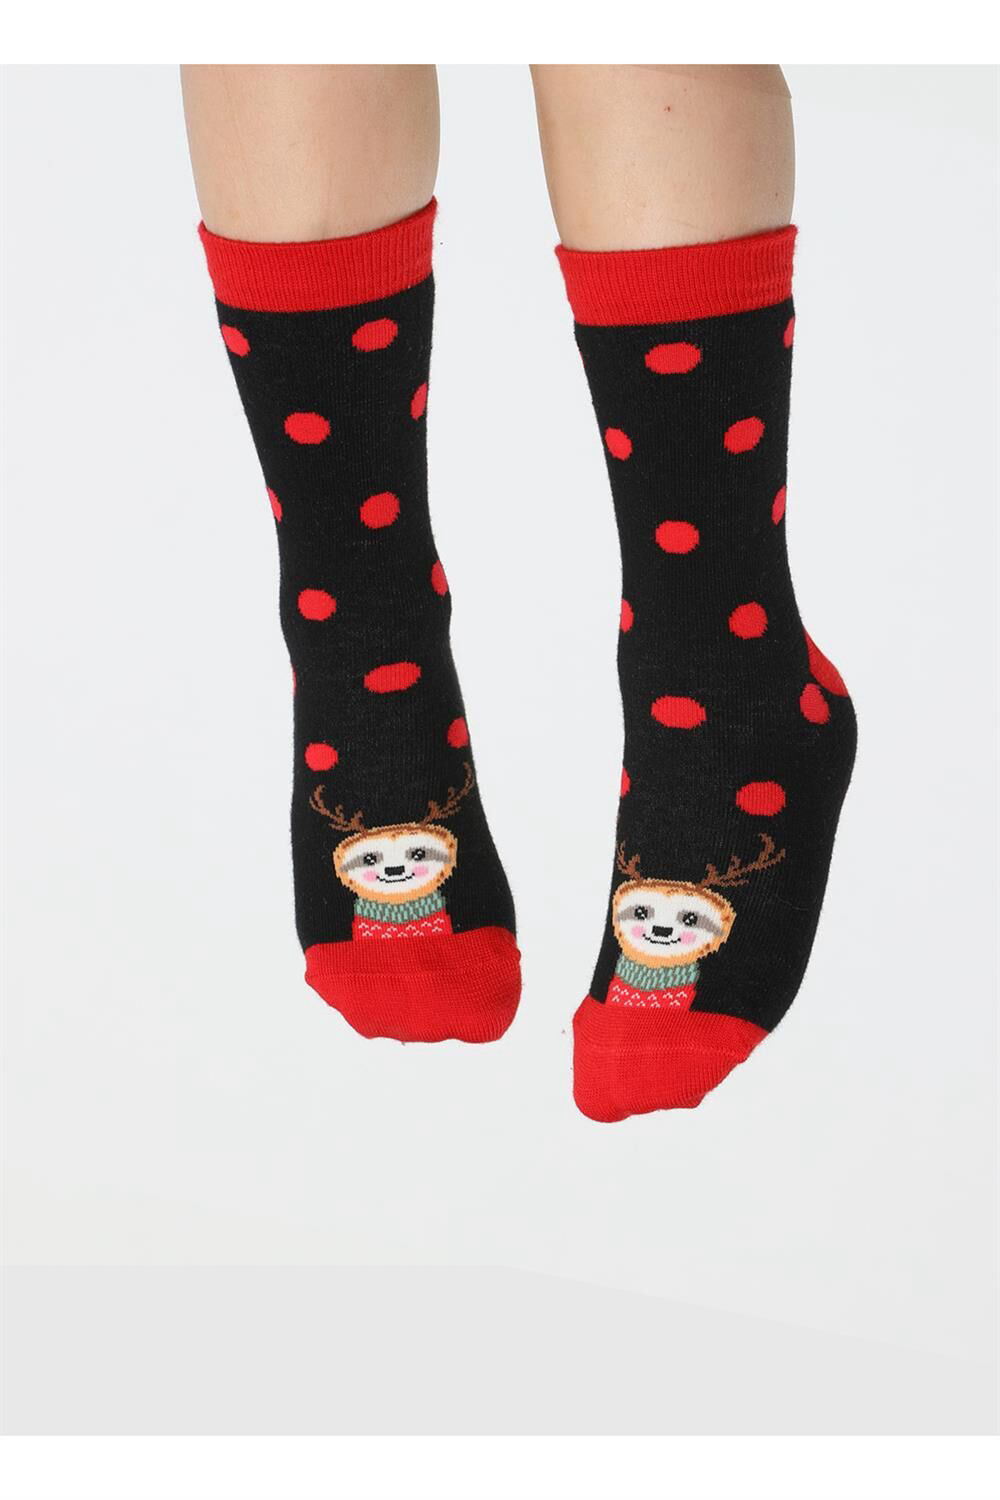 Socks - Girls' Children's Socks - Cotton Socks